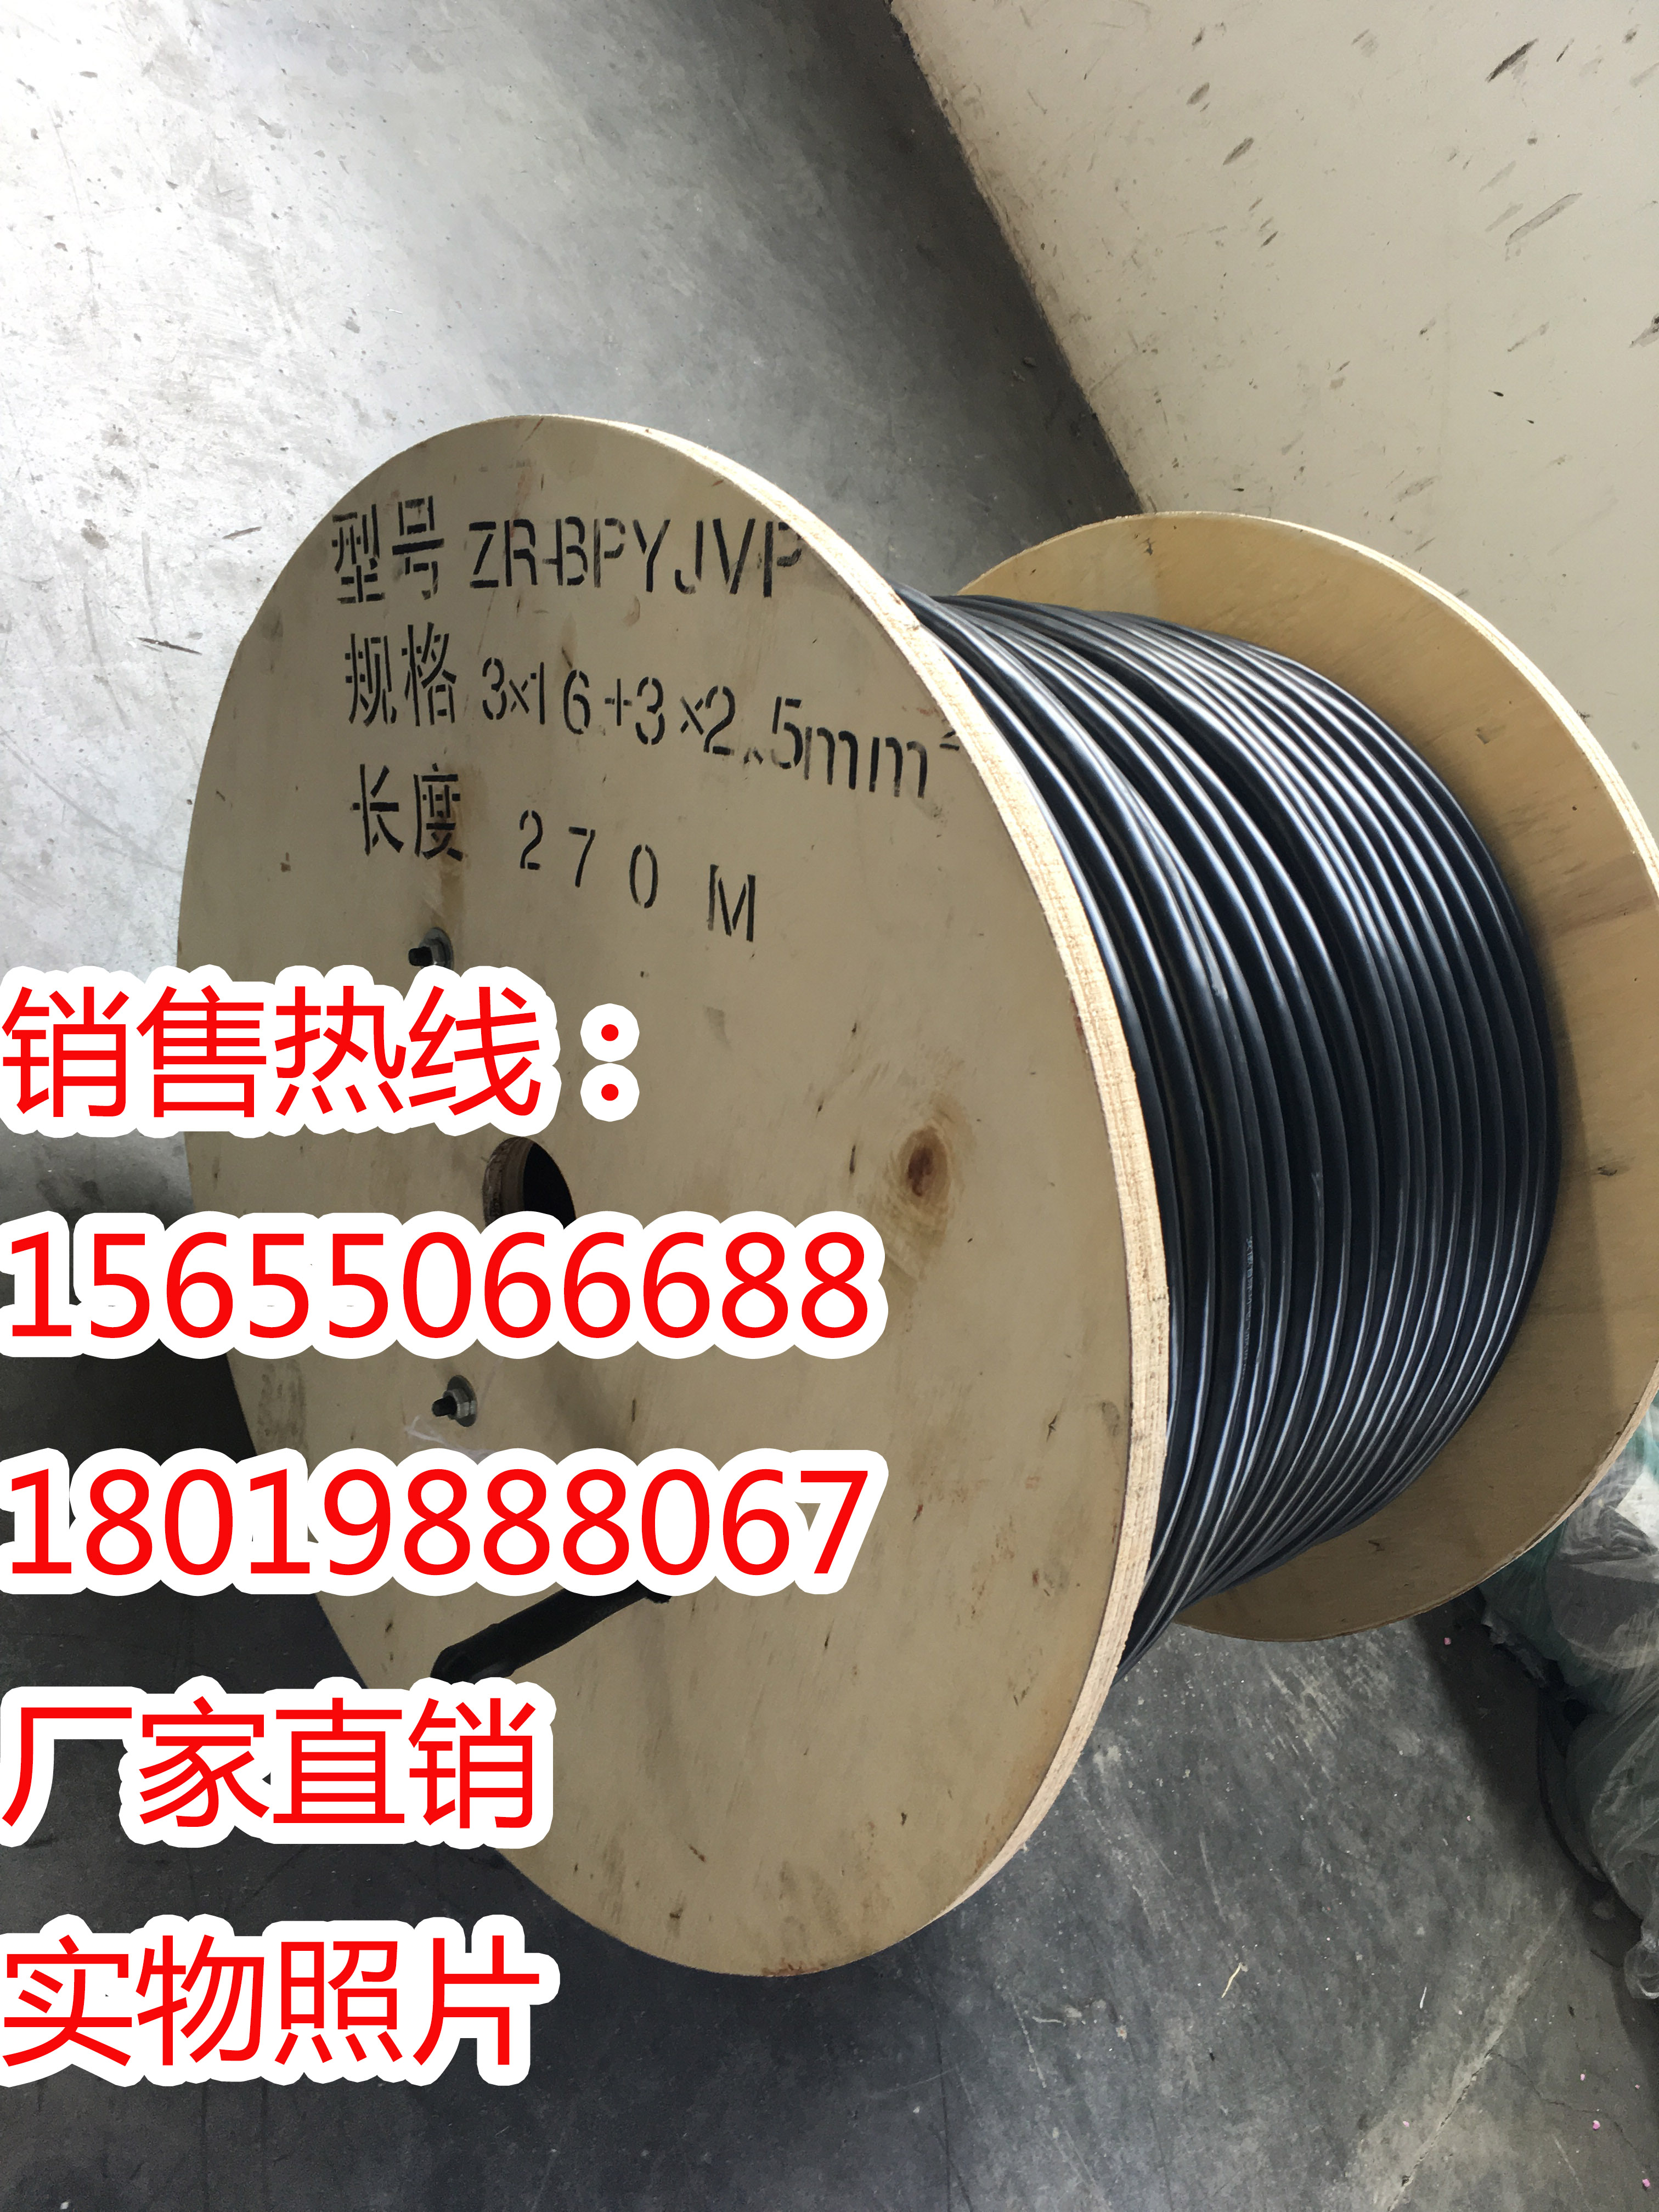 耐腐蚀电缆，耐腐蚀电缆生产厂家 耐腐蚀电缆耐腐蚀电缆生